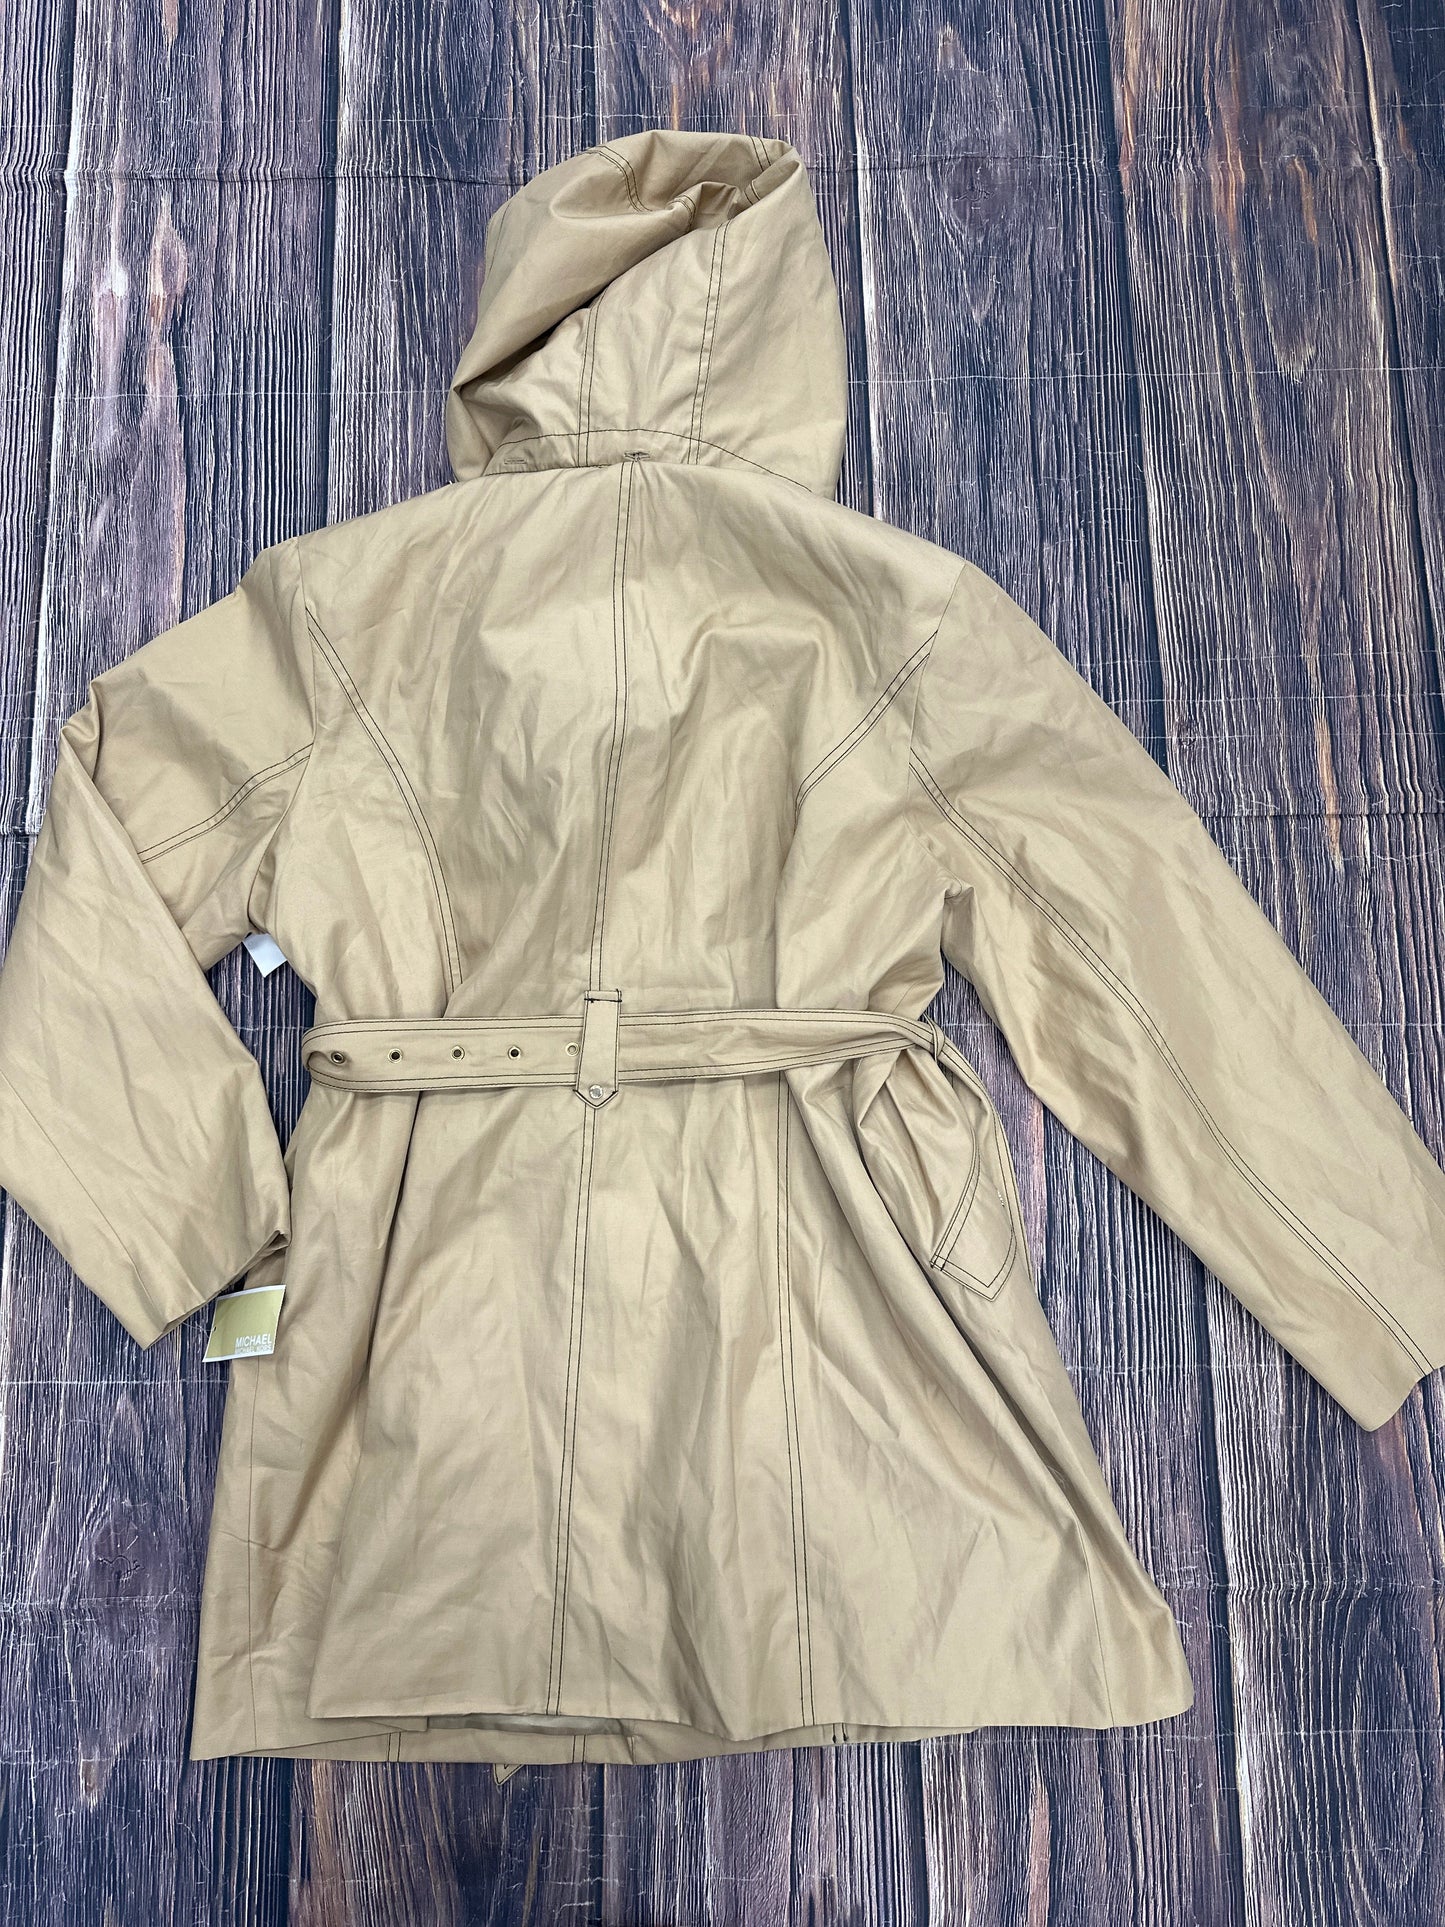 Tan Jacket Utility Michael By Michael Kors, Size 1x